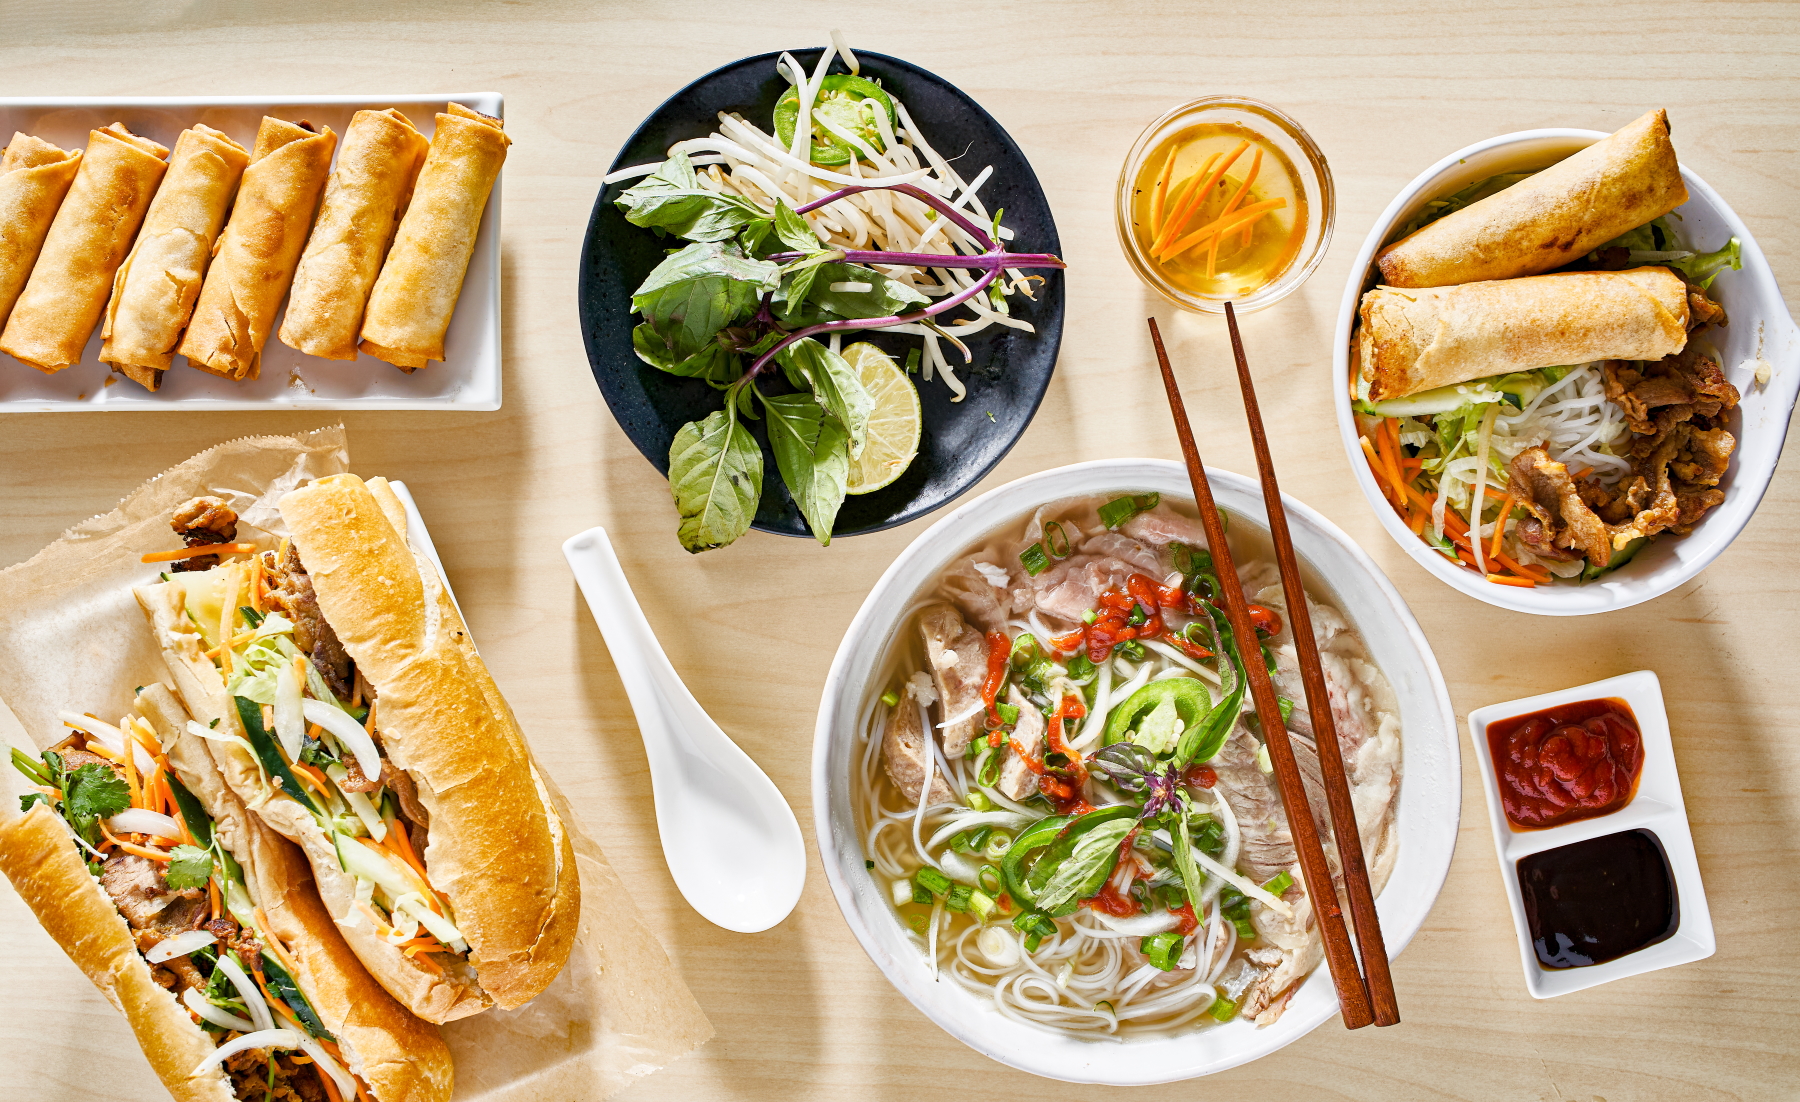 Quelle est la différence entre la cuisine vietnamienne et chinoise?